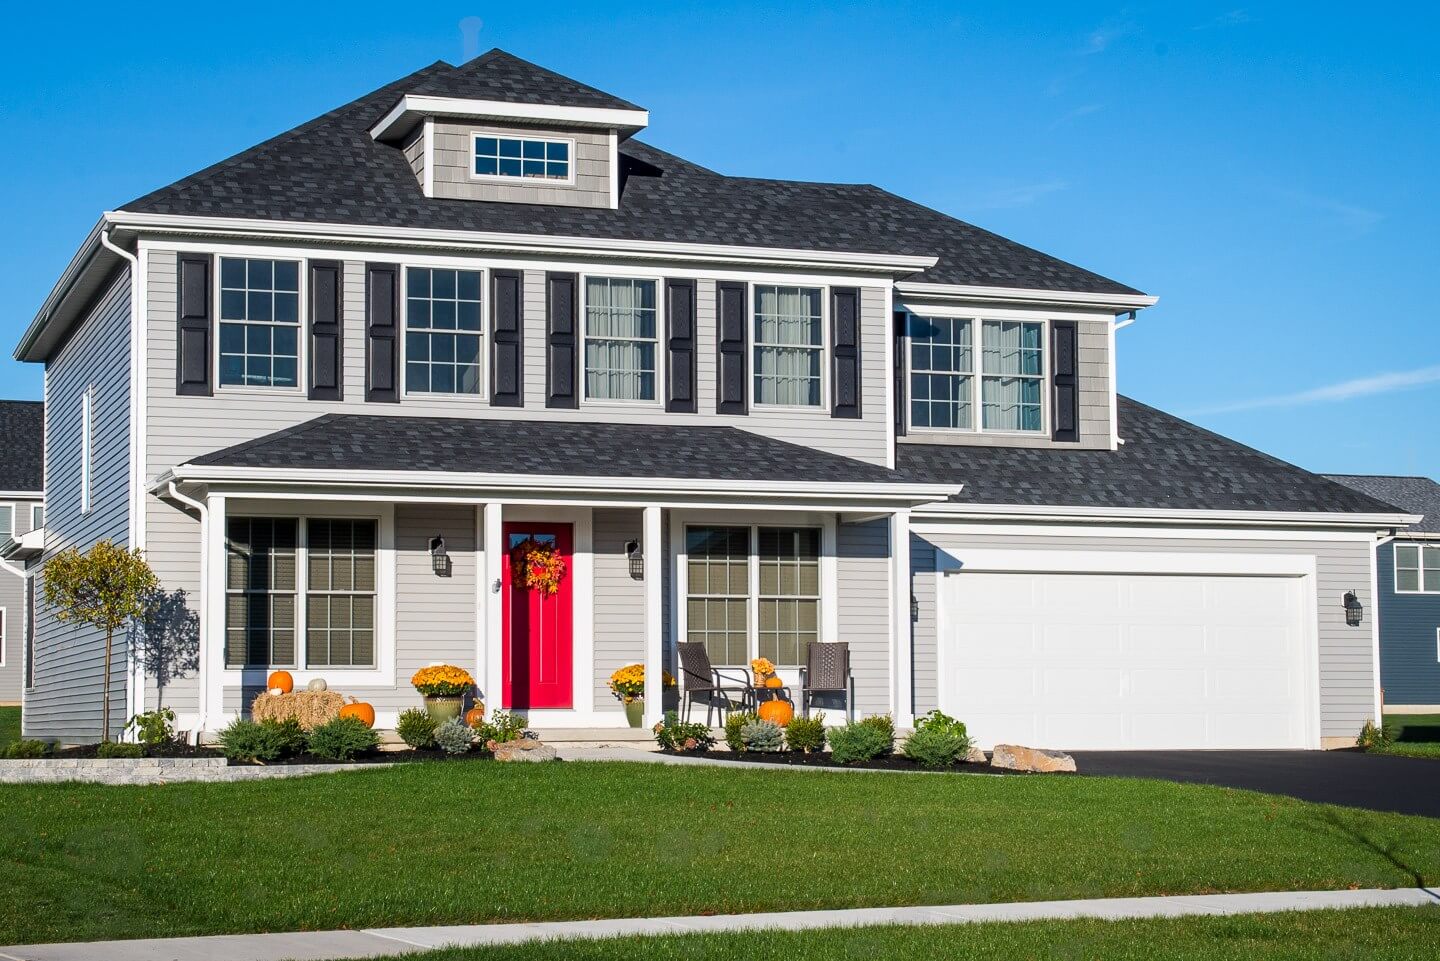 Marrono #1 for New Single Family Homes for Sale in Buffalo, NY & WNY  Lexington II